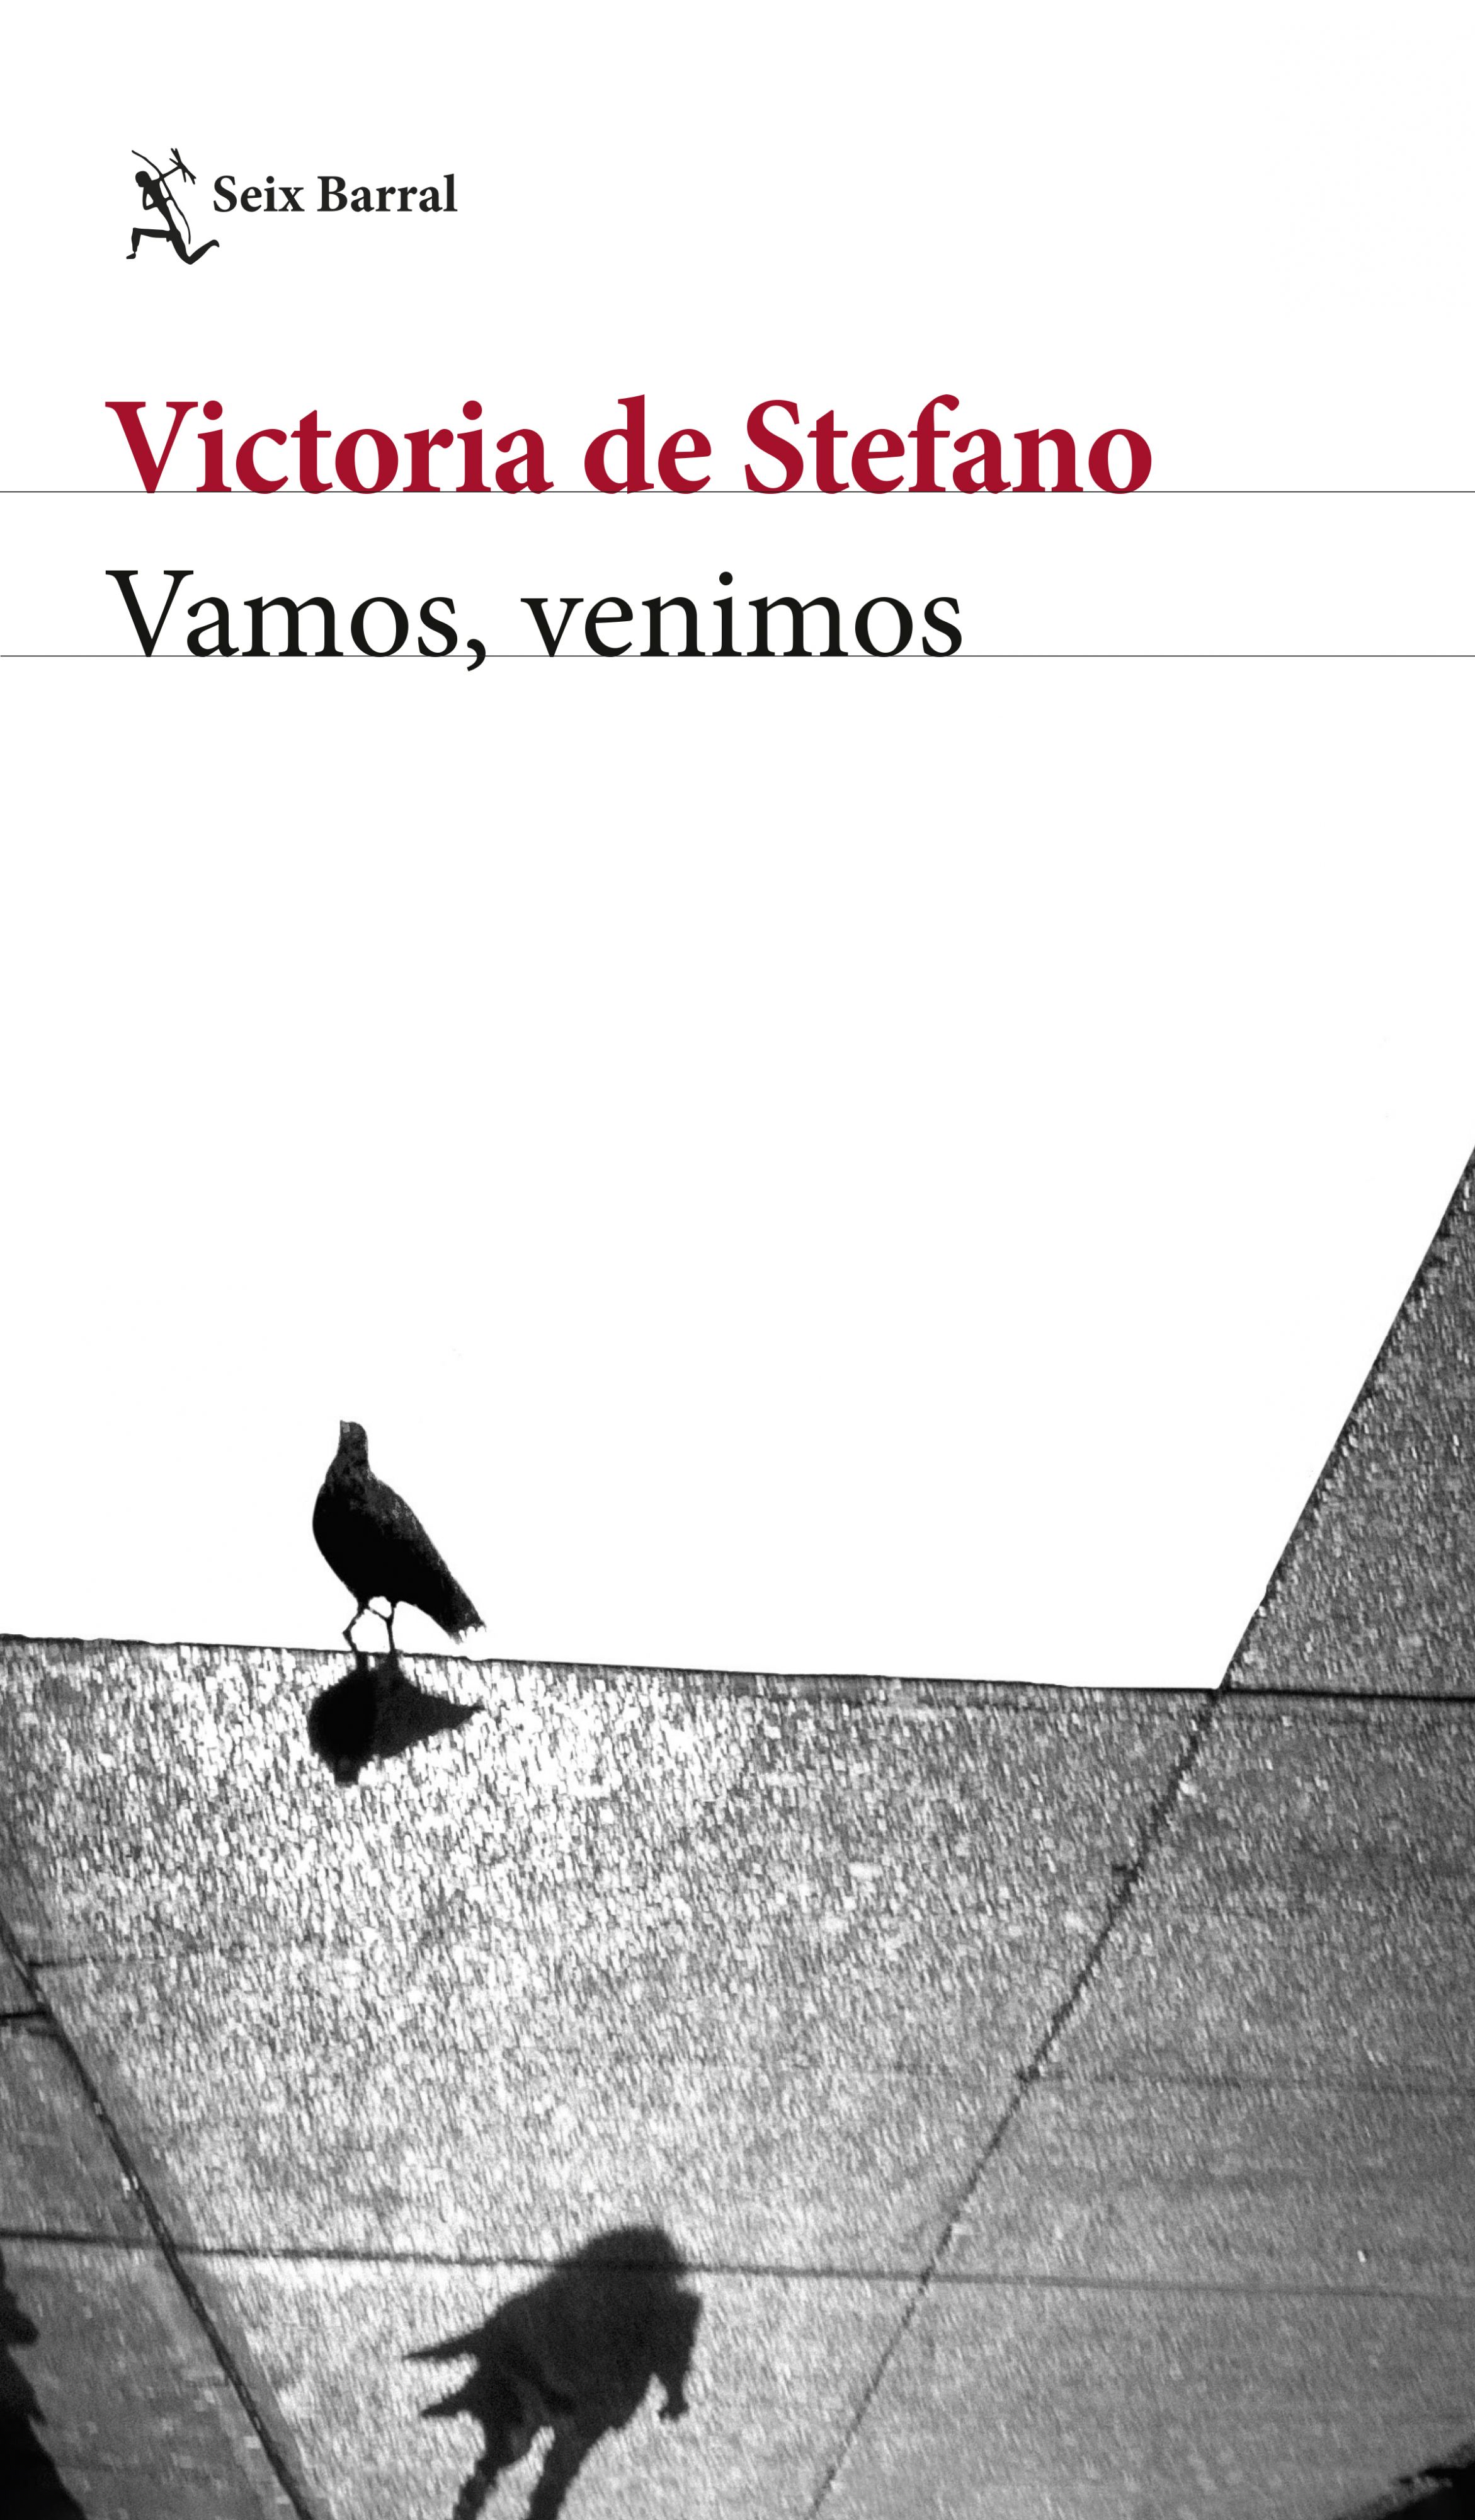 Portada del libro "Vamos, venimos", la última novela publicada de la escritora Victoria De Stefano. (Cortesía: Planeta de Libros).